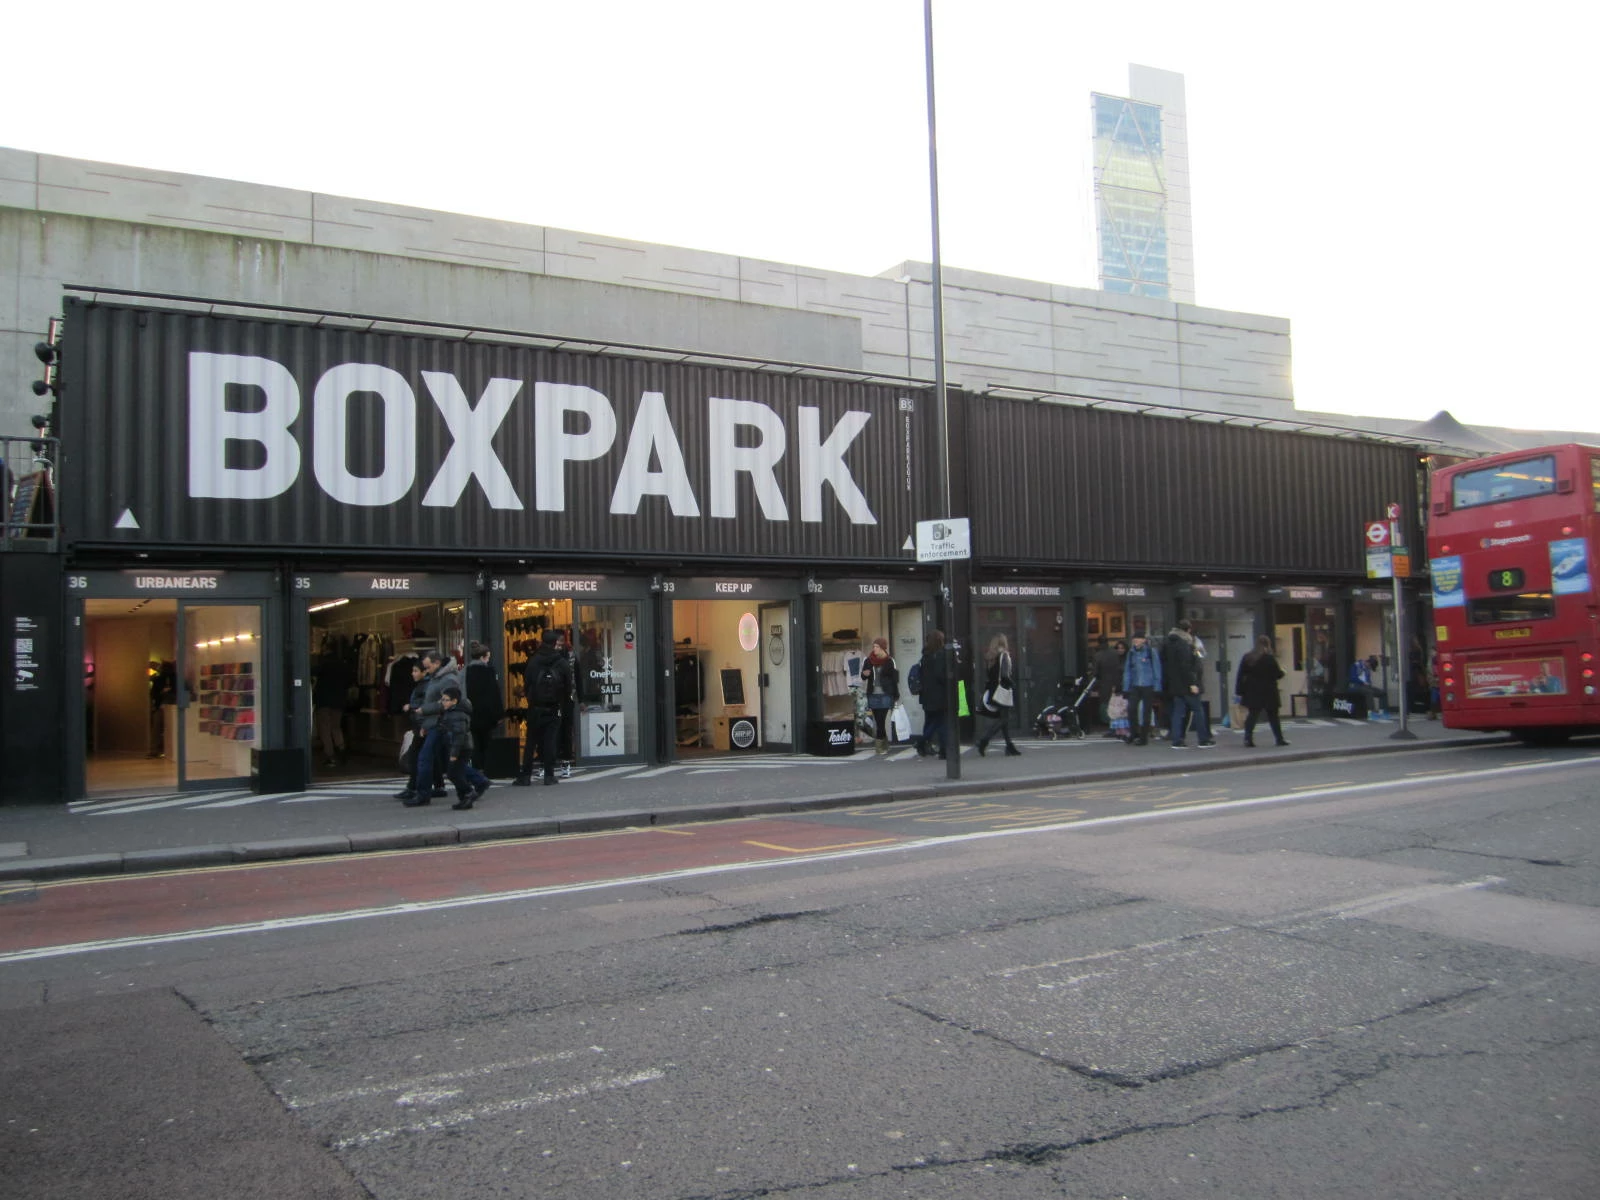 BOXPARK, London